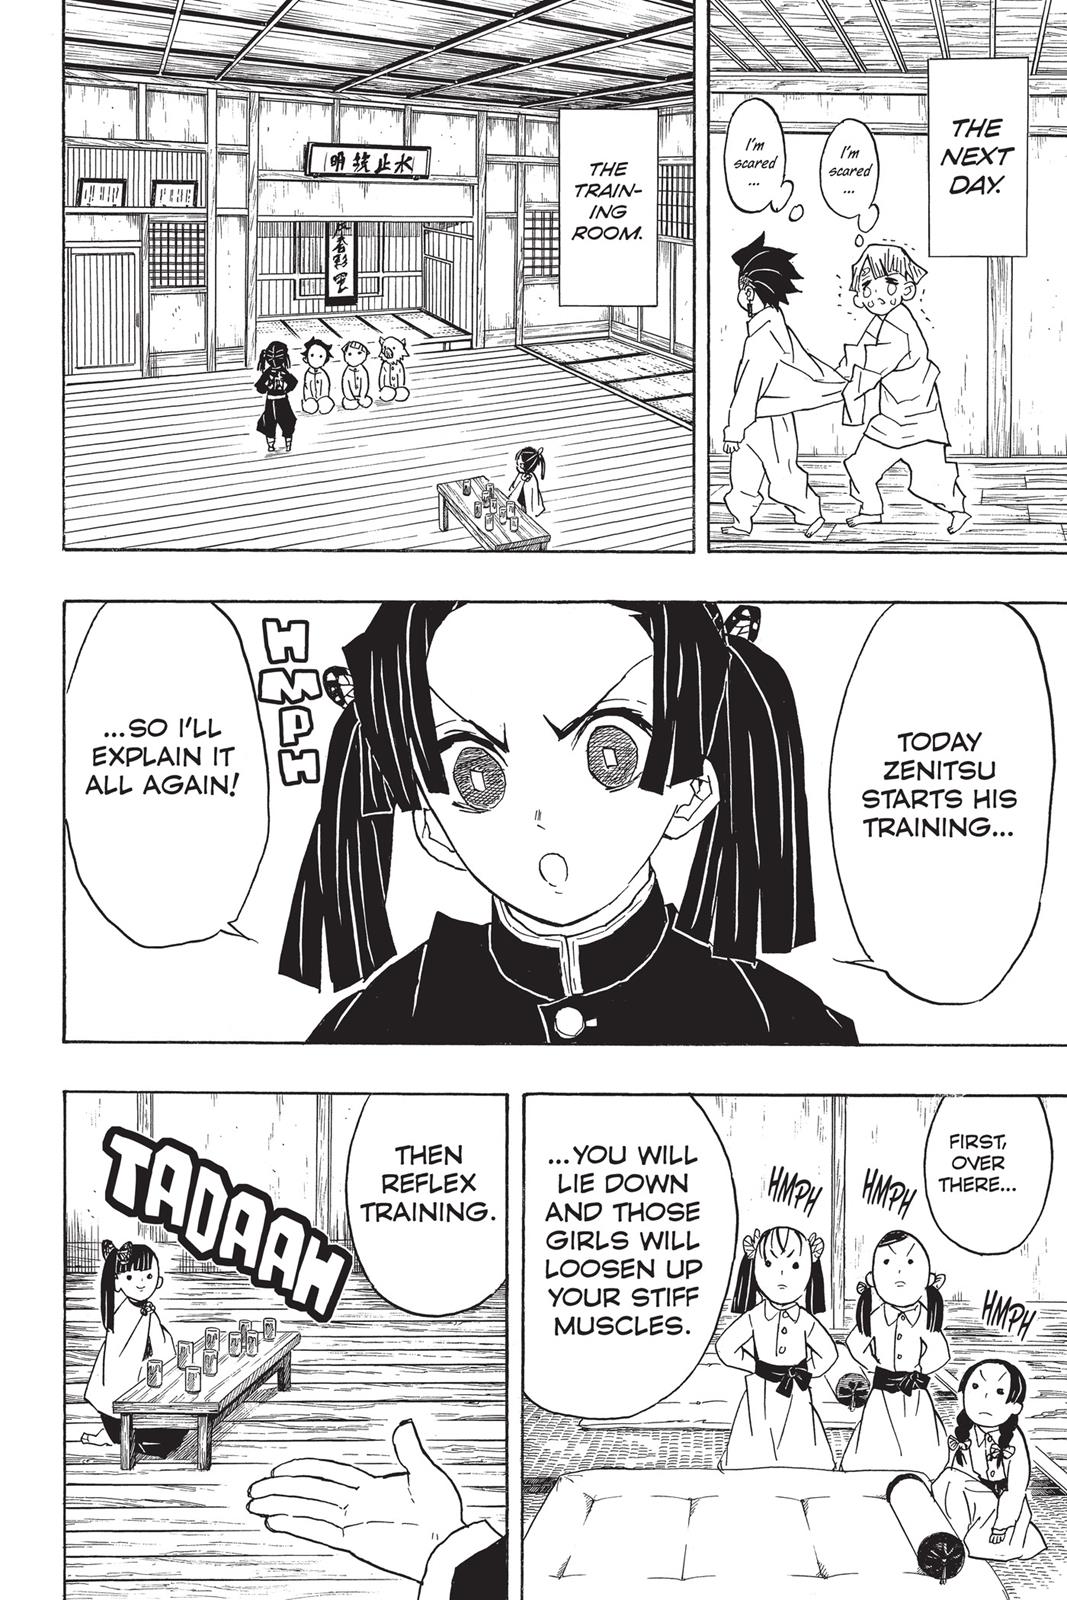 Demon Slayer Manga Manga Chapter - 49 - image 4